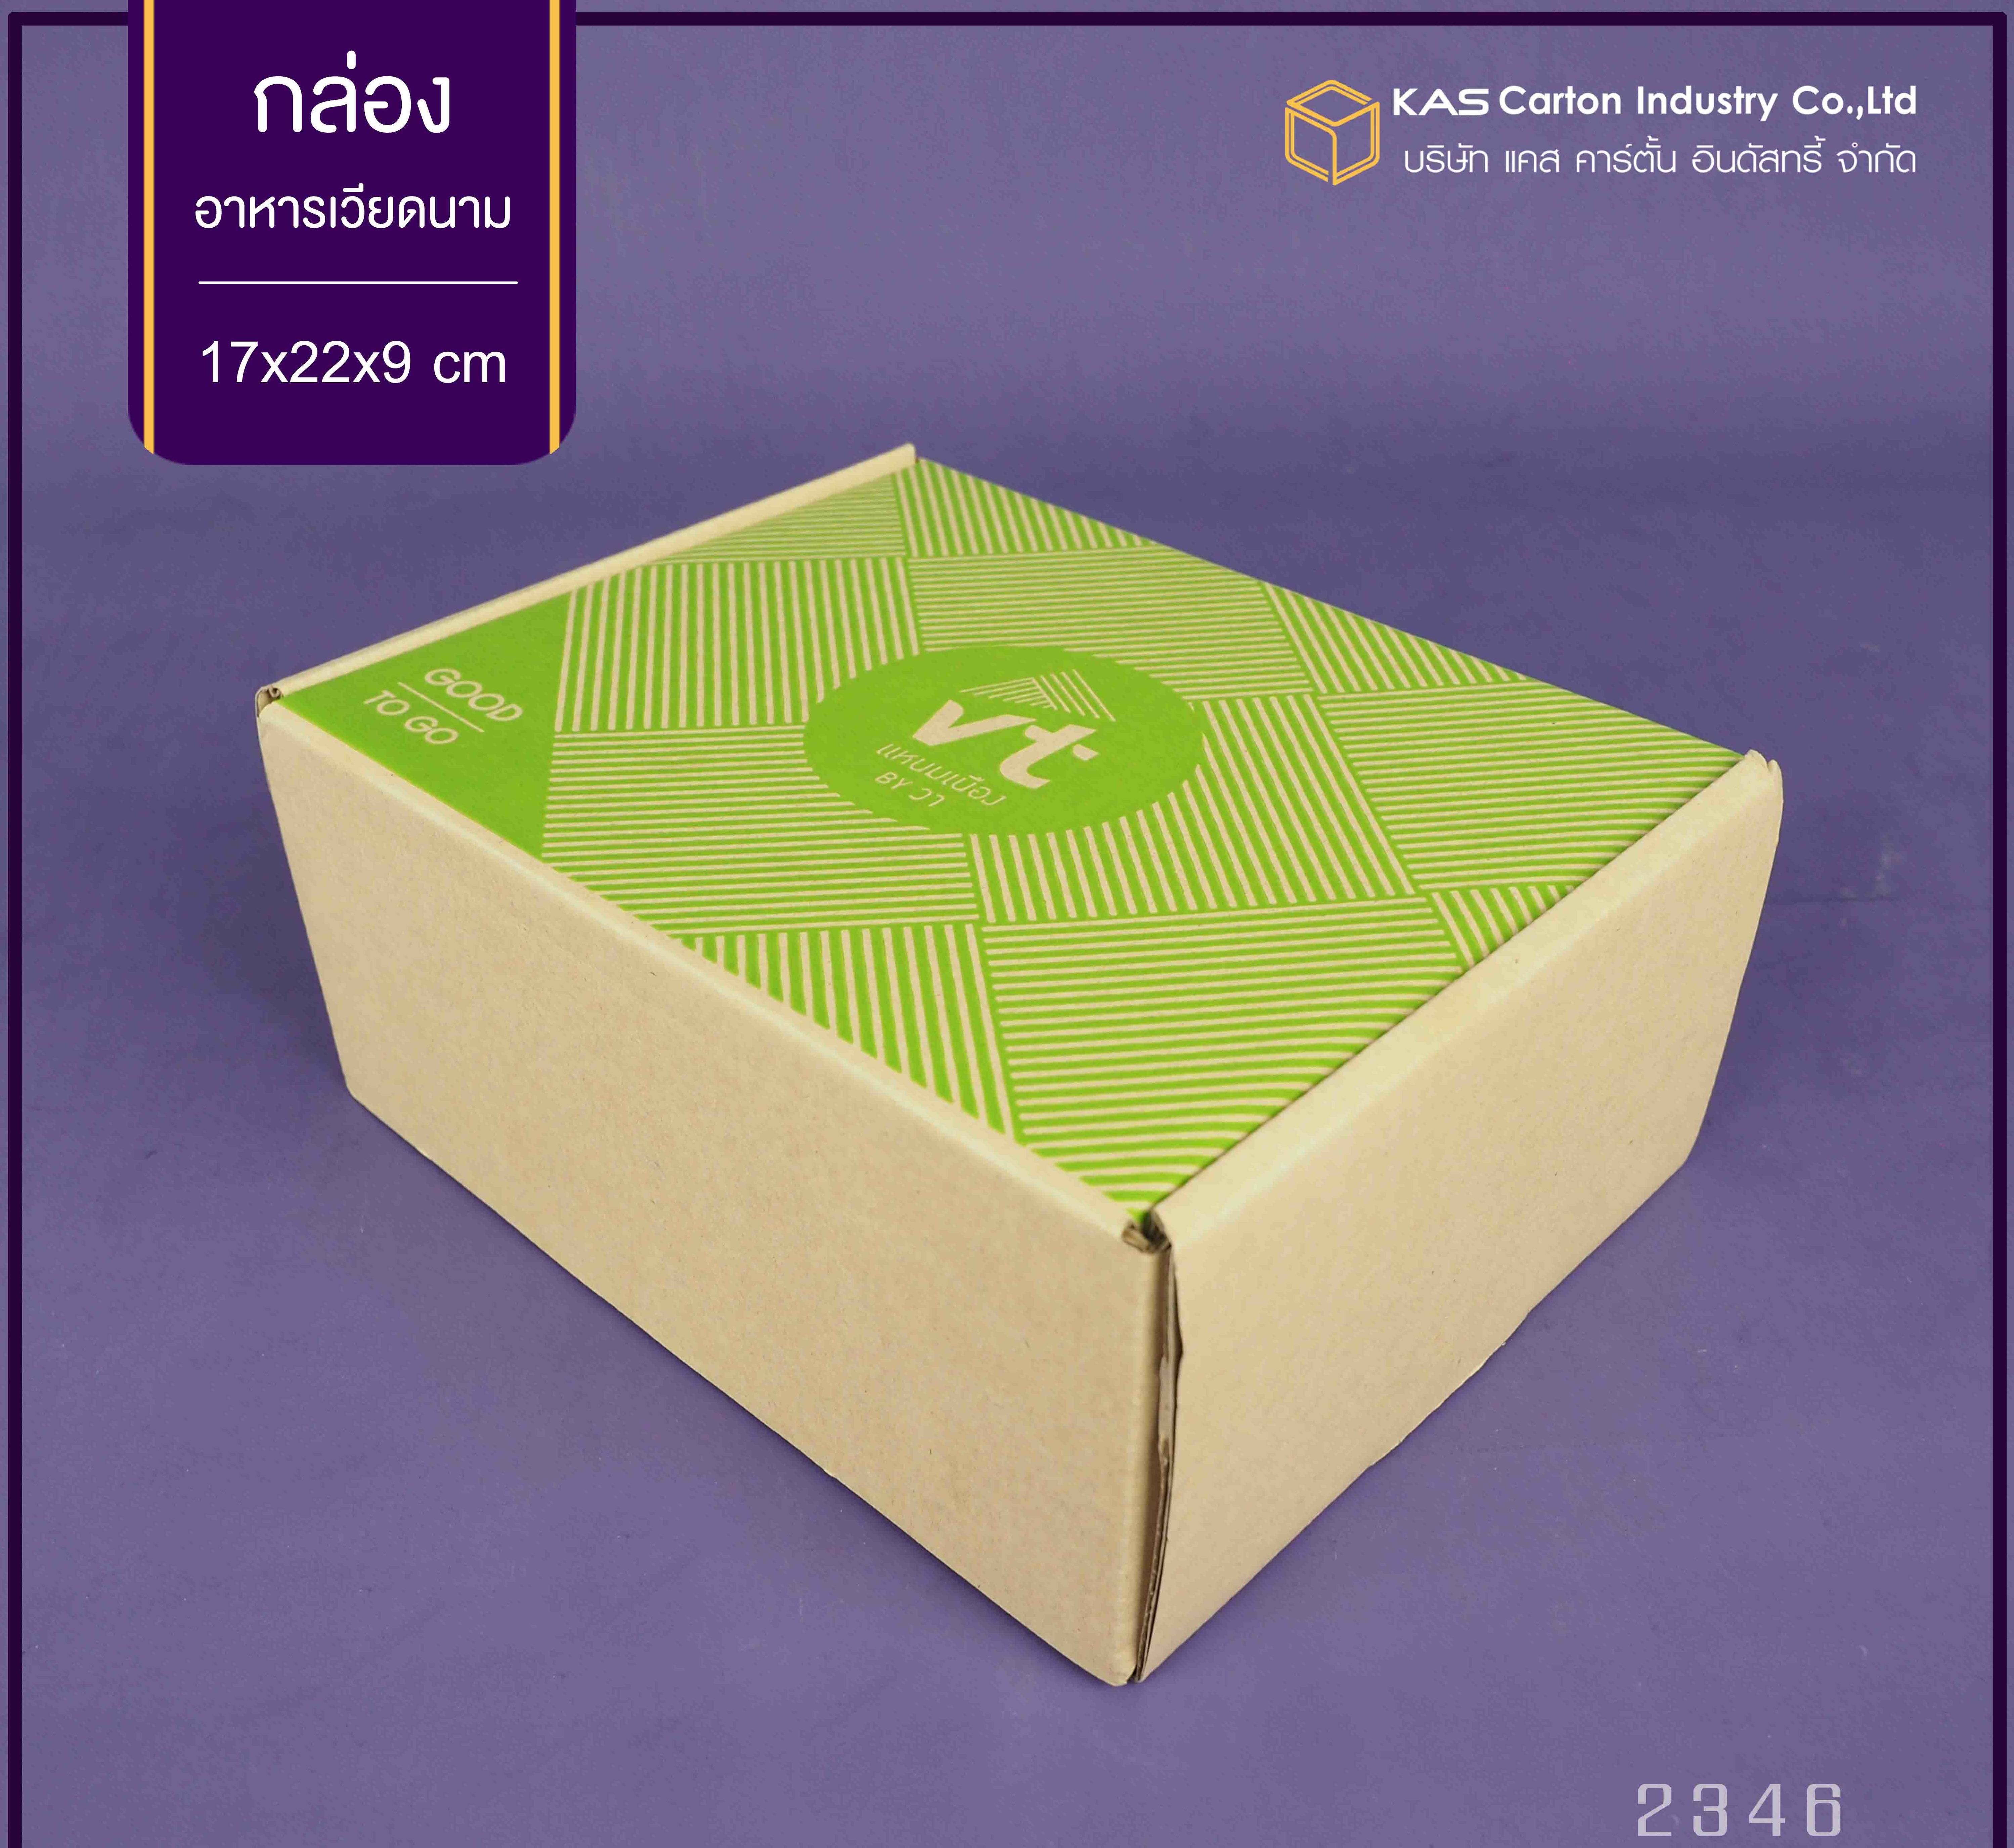 กล่องลูกฟูก สำเร็จรูป และ สั่งผลิต ตามความต้องการลูกค้า กล่องลูกฟูก SME กล่องกระดาษลูกฟูก กล่องอาหารใส่ อาหารเวียดนาม Brand VT แหนมเนือง